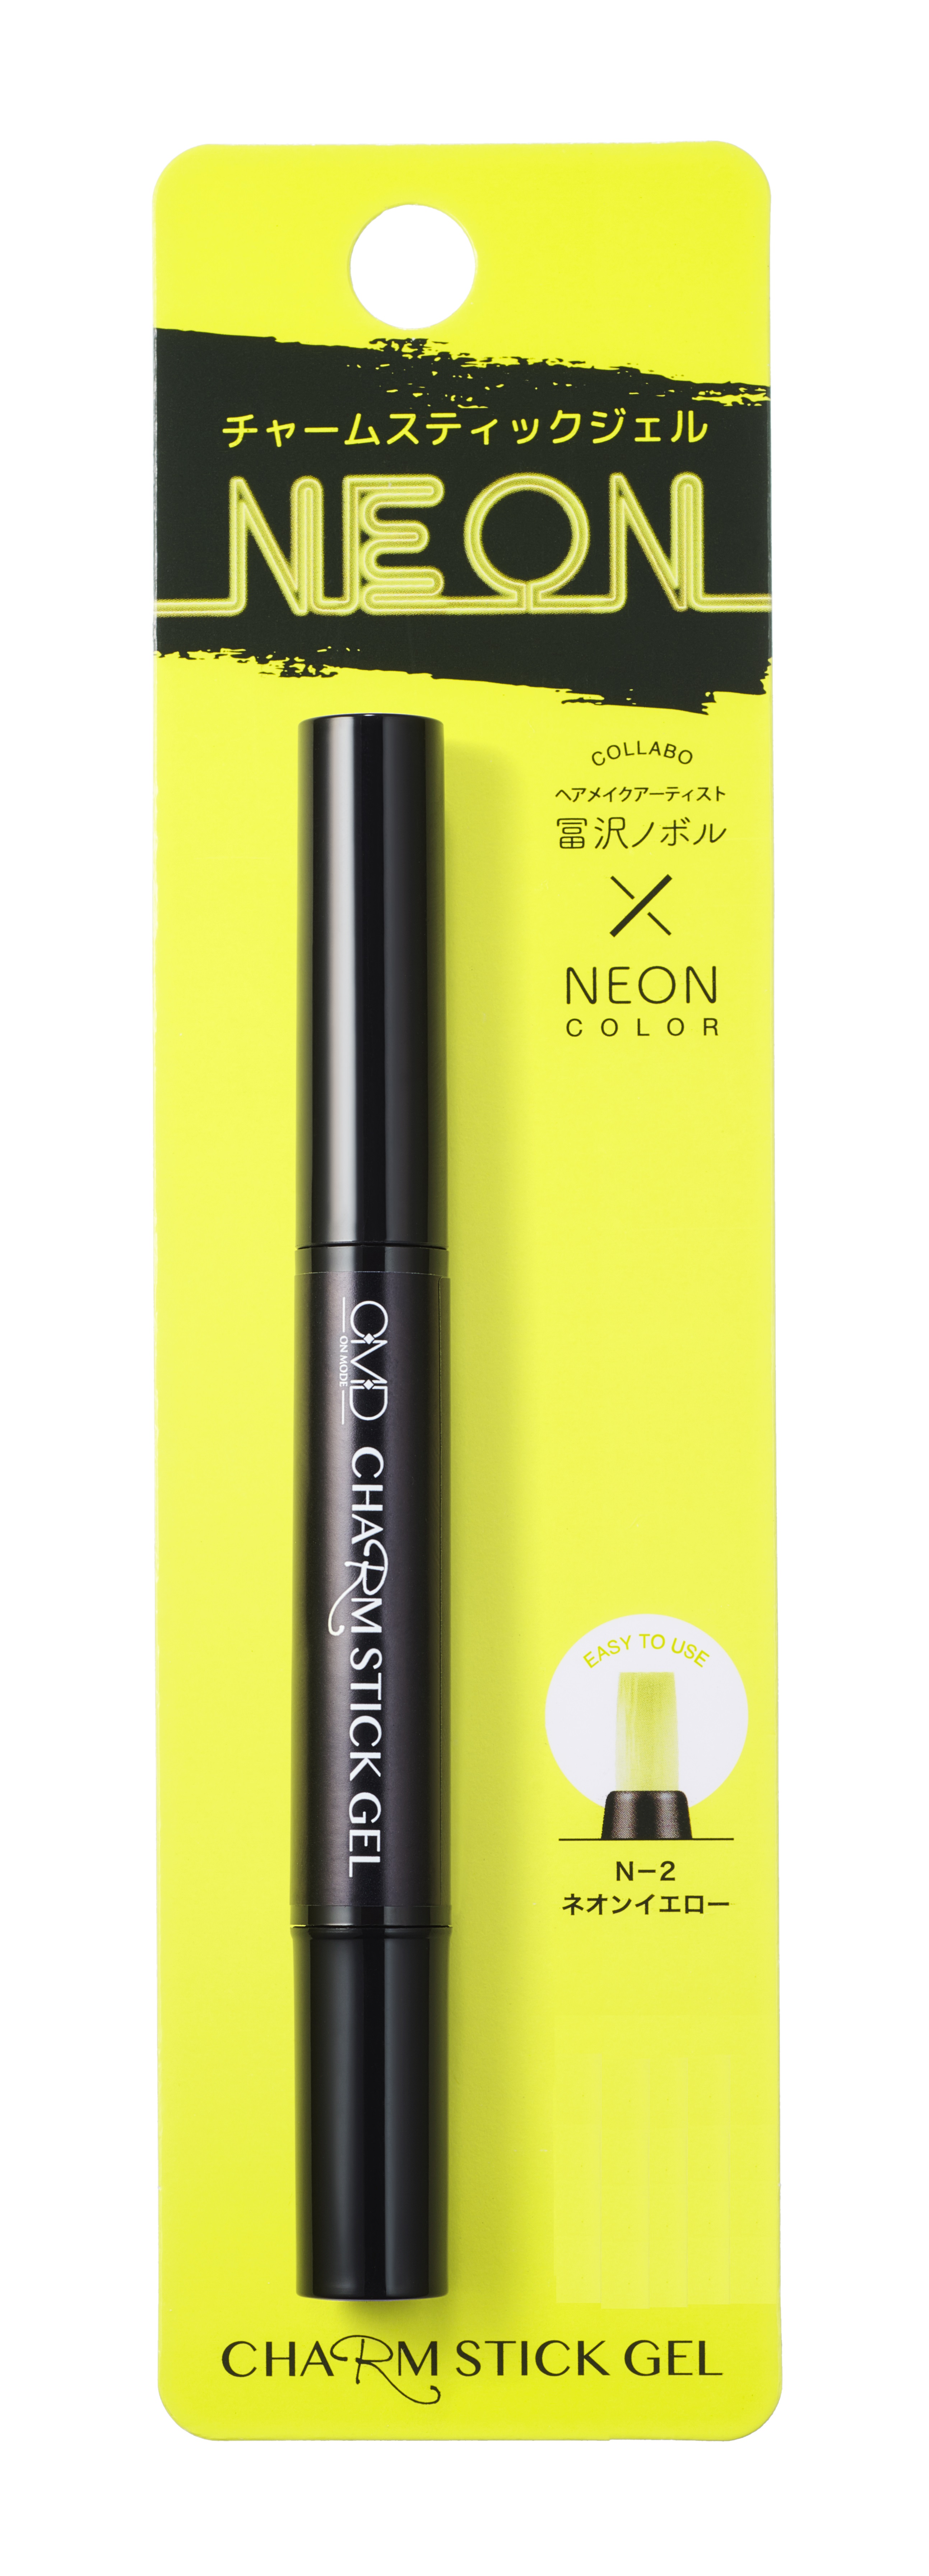 Гель-лак Для Ногтей OMD Charm Stick Gel N-2 Yellow Neon 11шт набор магнит магнитная палочка ручки кошачий глаз гель лак уф светодиодный нейл арт маникюр